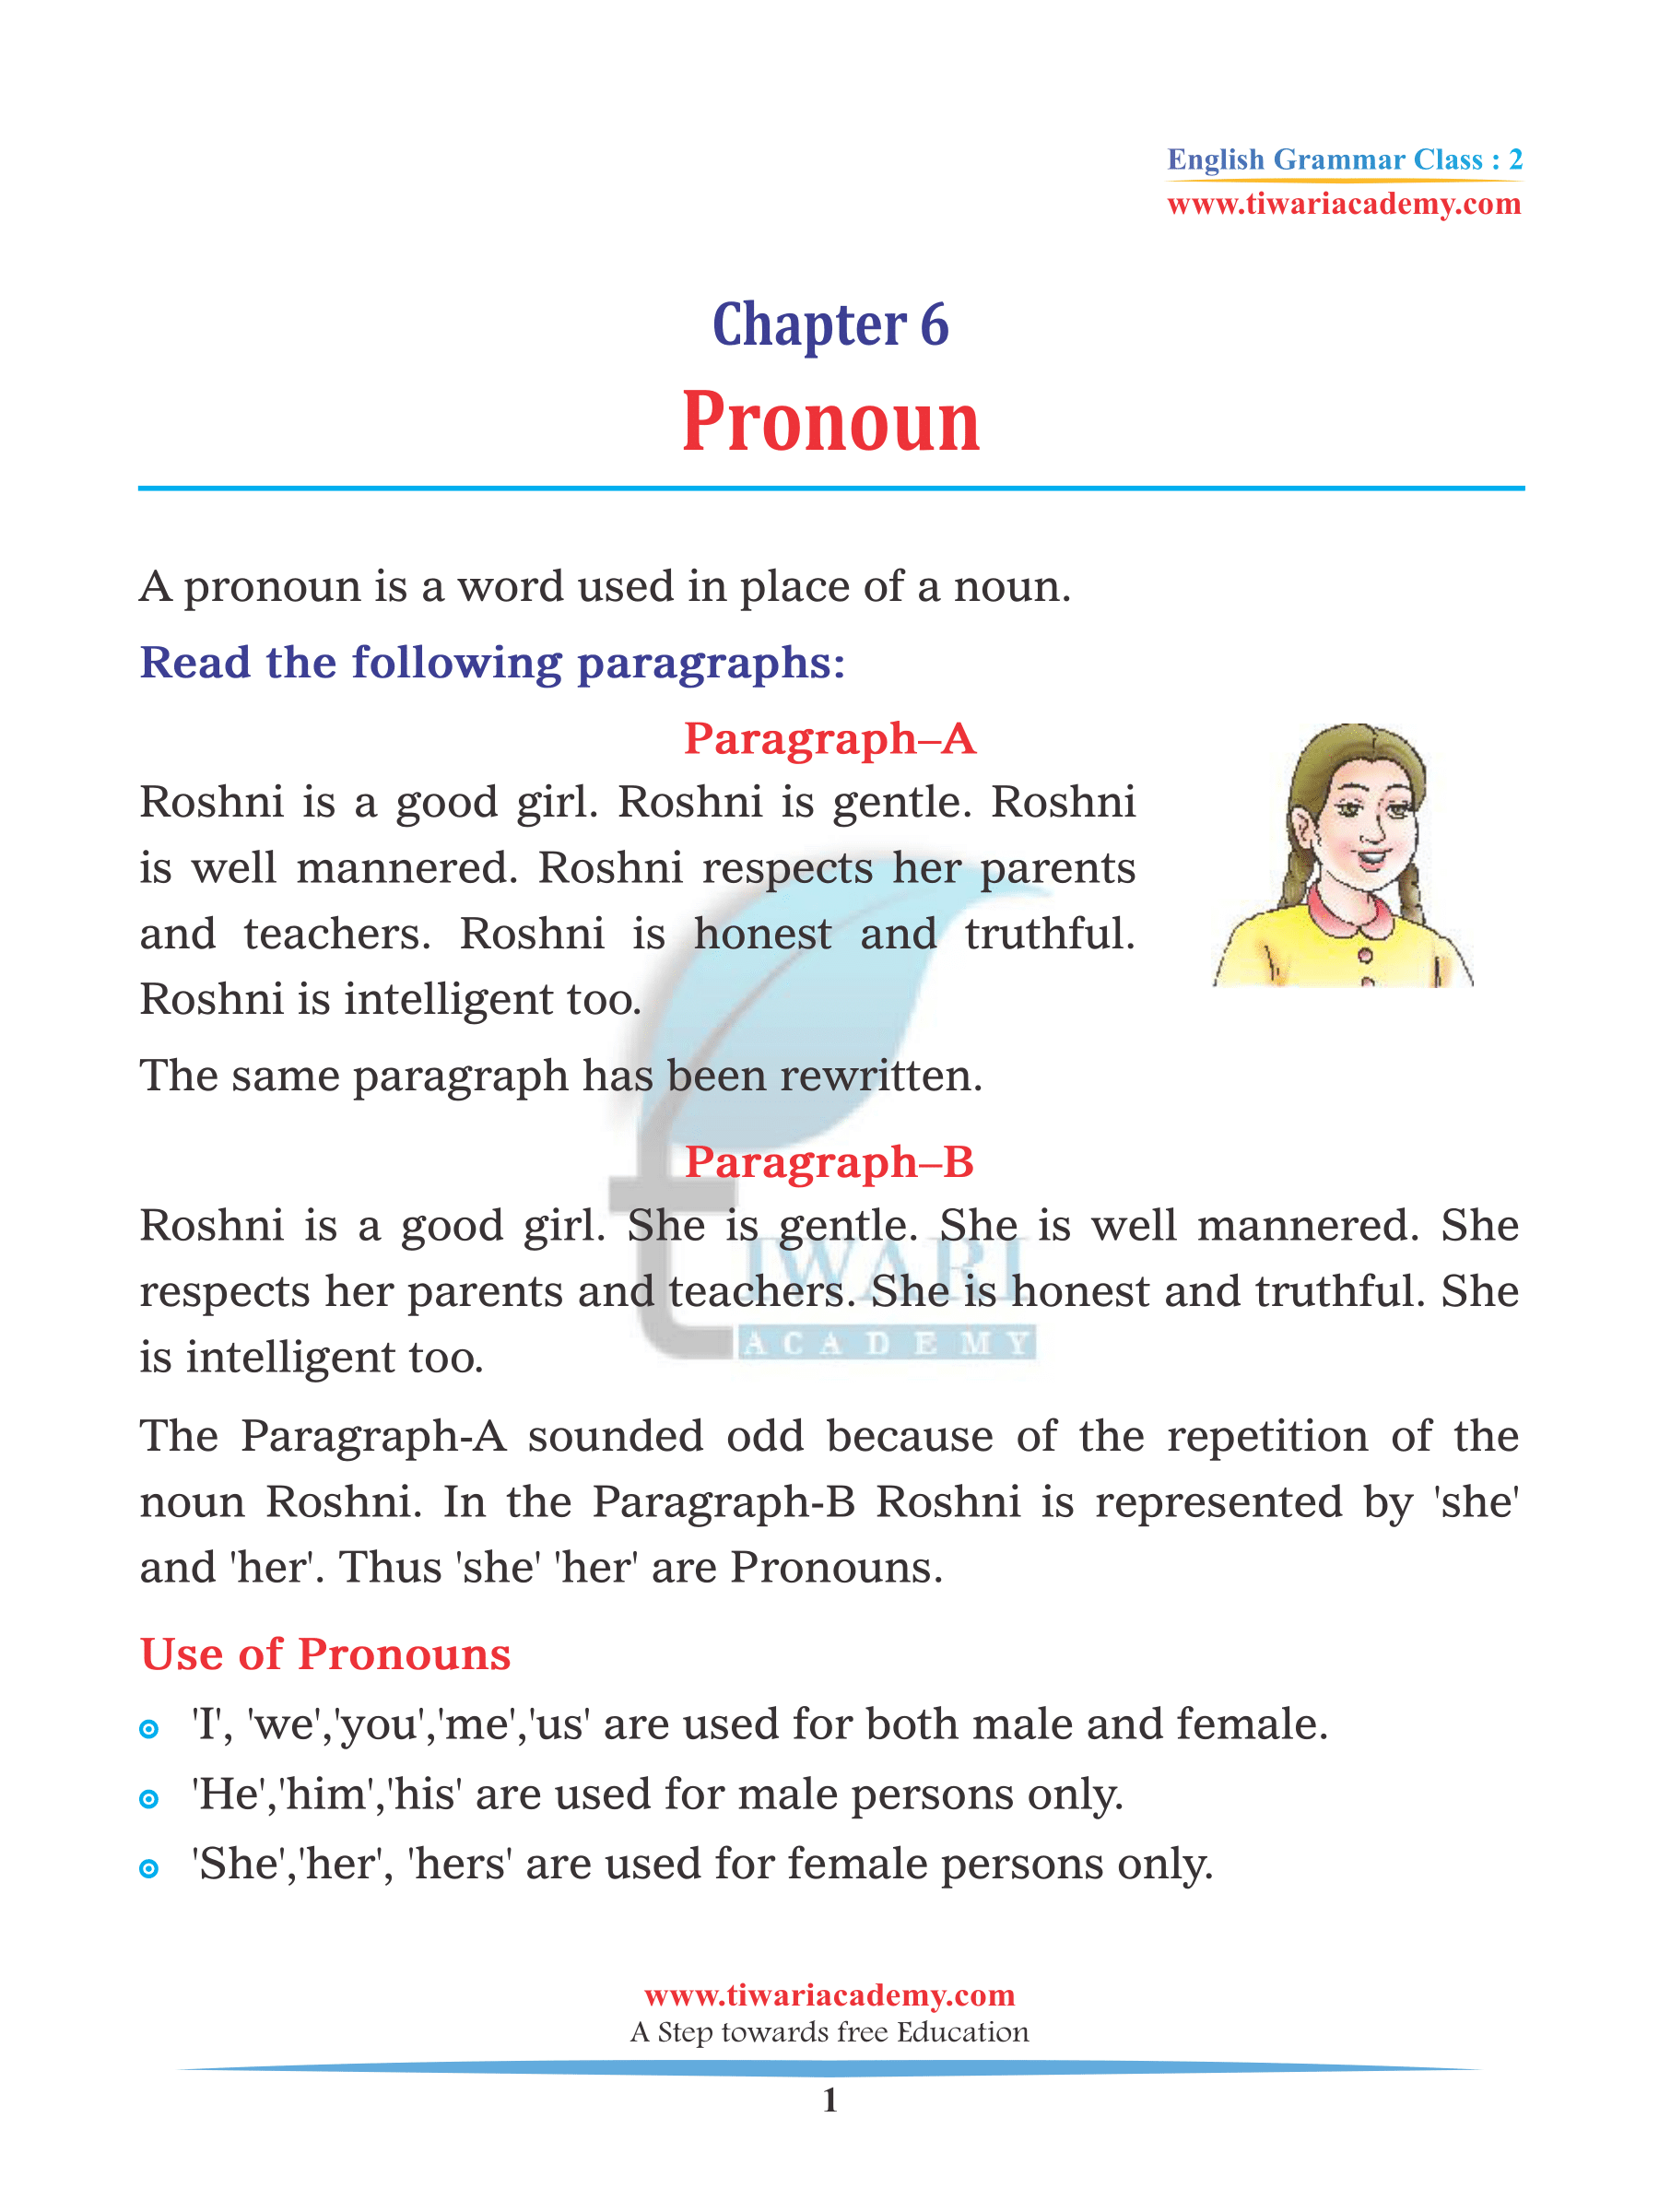 Class 2 English Grammar Chapter 6 Pronoun Practice